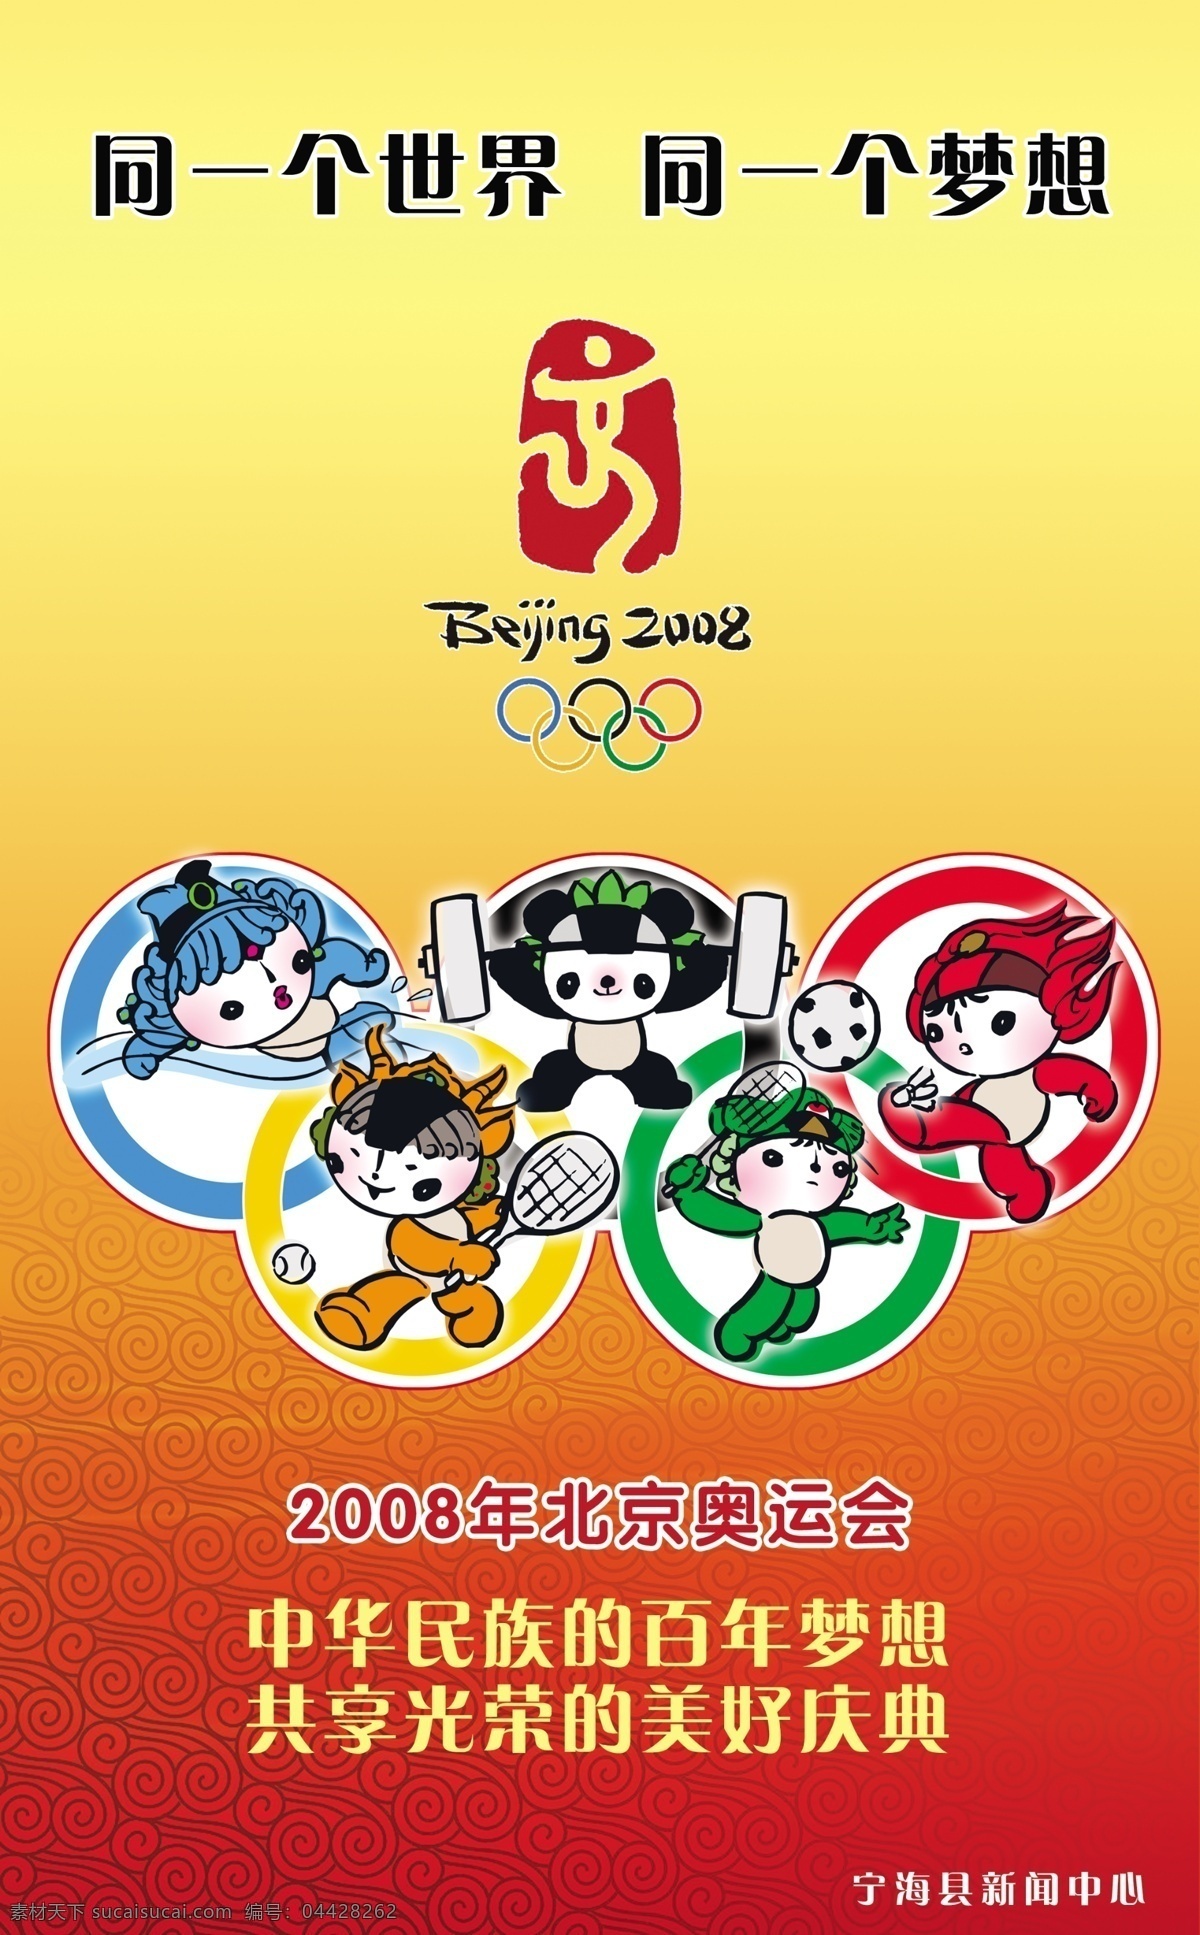 奥运标志 北京奥运 福娃 广告设计模板 国内广告设计 五环 源文件库 奥运公益广告 迎奥运 同一个 世界 梦想 奥运项目 展板 公益展板设计